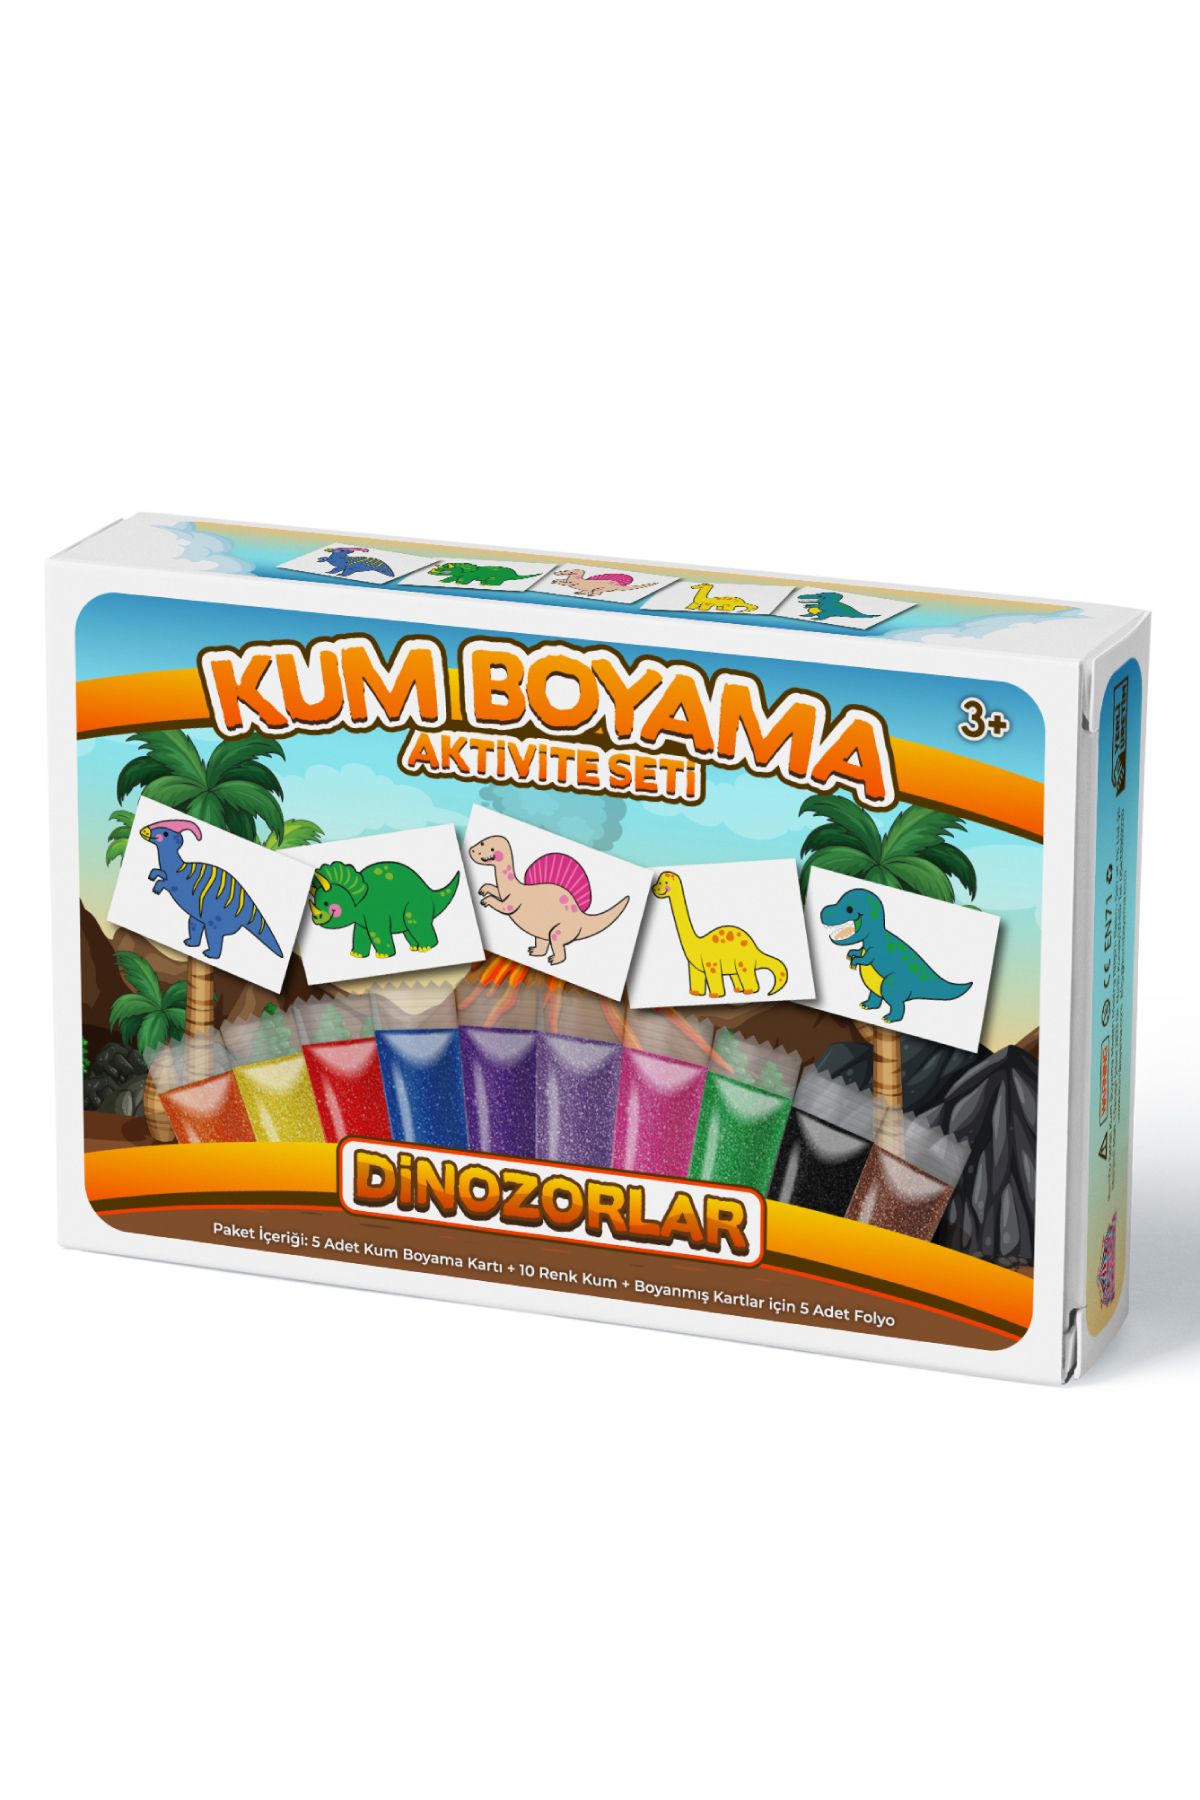 Kumbo Kum Boyama Dinozorlar | Kum Boyama Aktivite Seti 5'li Paket